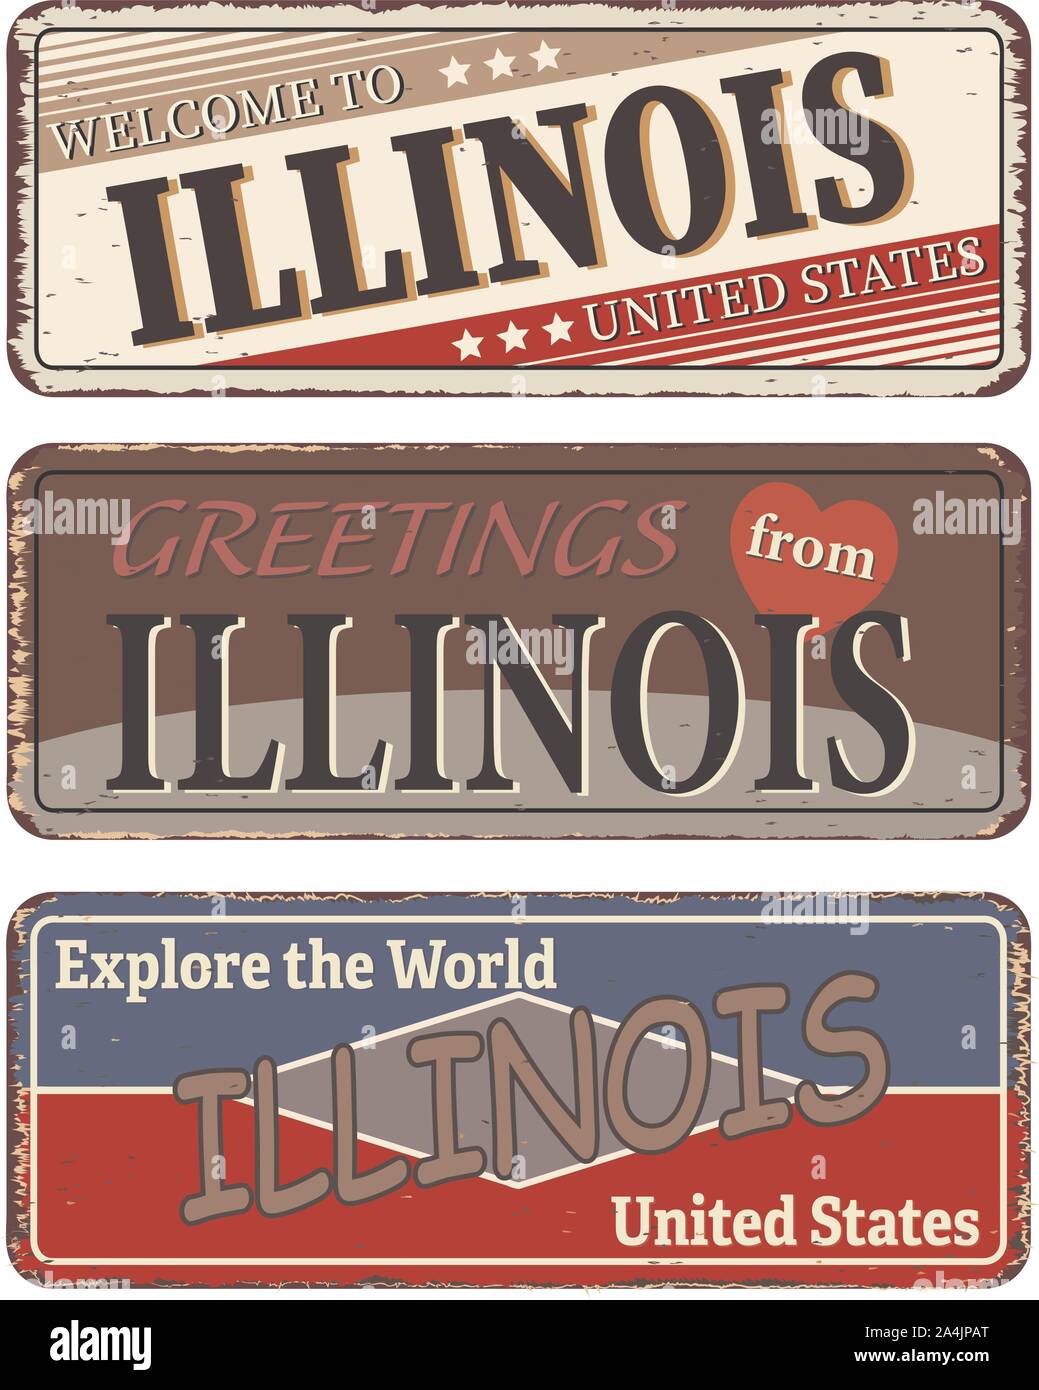 Vintage tin sign collection avec nous. État de l'Illinois. Retro de souvenirs ou de vieux papier carte postale des modèles sur fond rouille Illustration de Vecteur